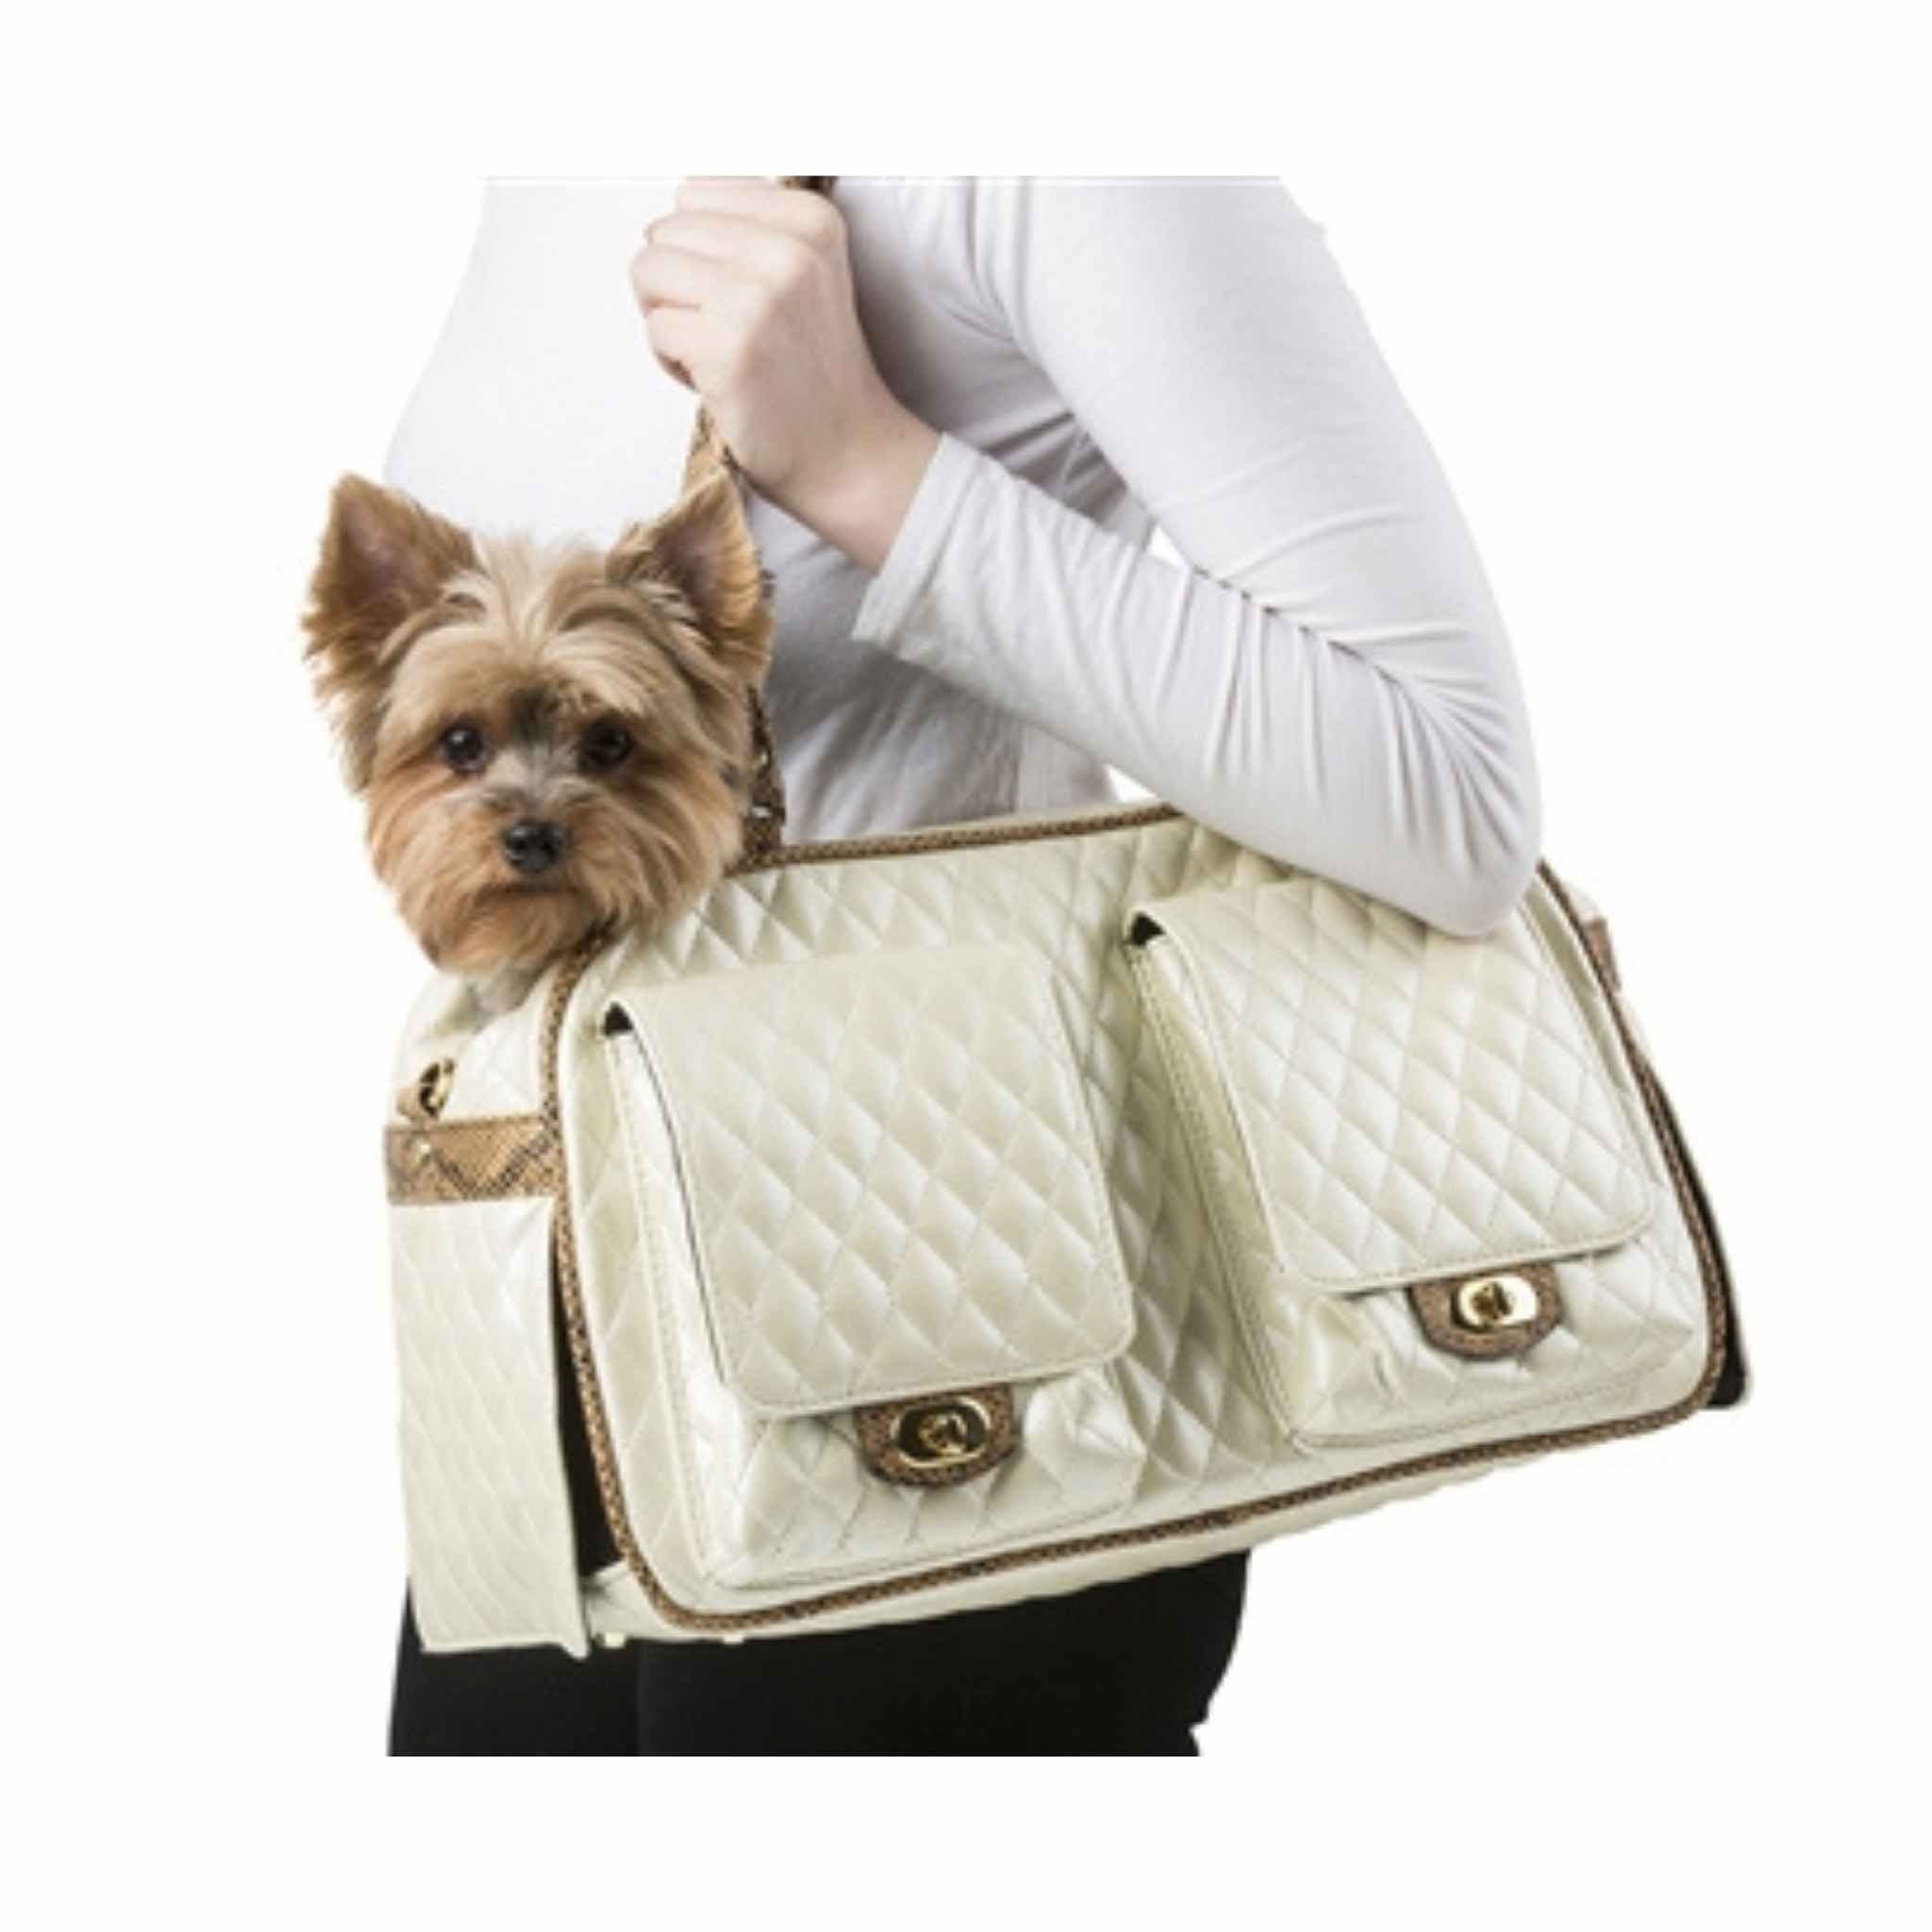 Designer Luxury Dog Carrier, Pet Carrier